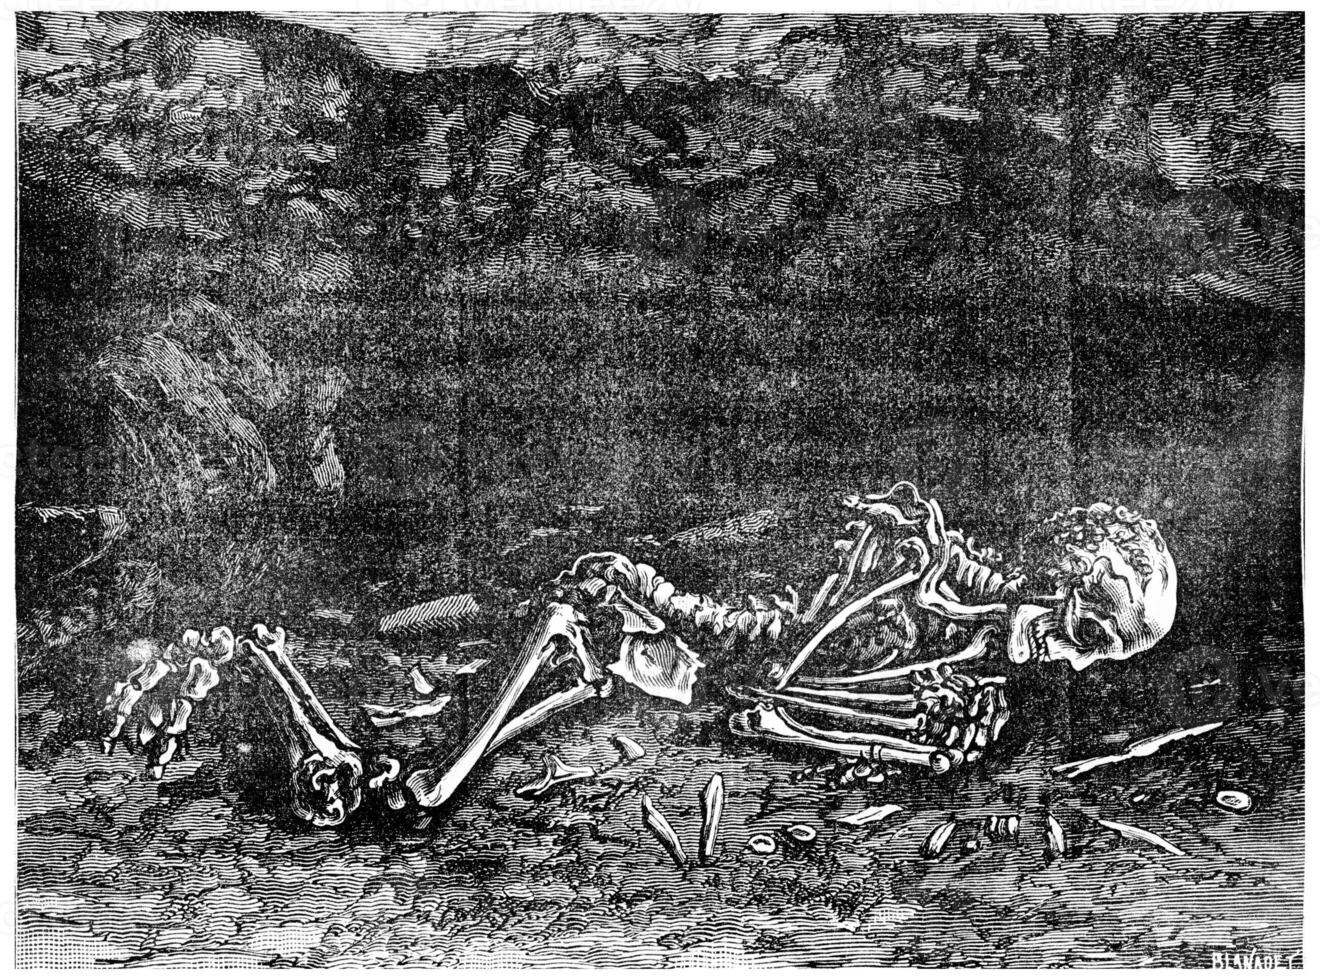 le fossile homme a trouvé dans 1872 dans une la grotte dans Menton, maintenant dans le musée de Paris, ancien gravure. photo